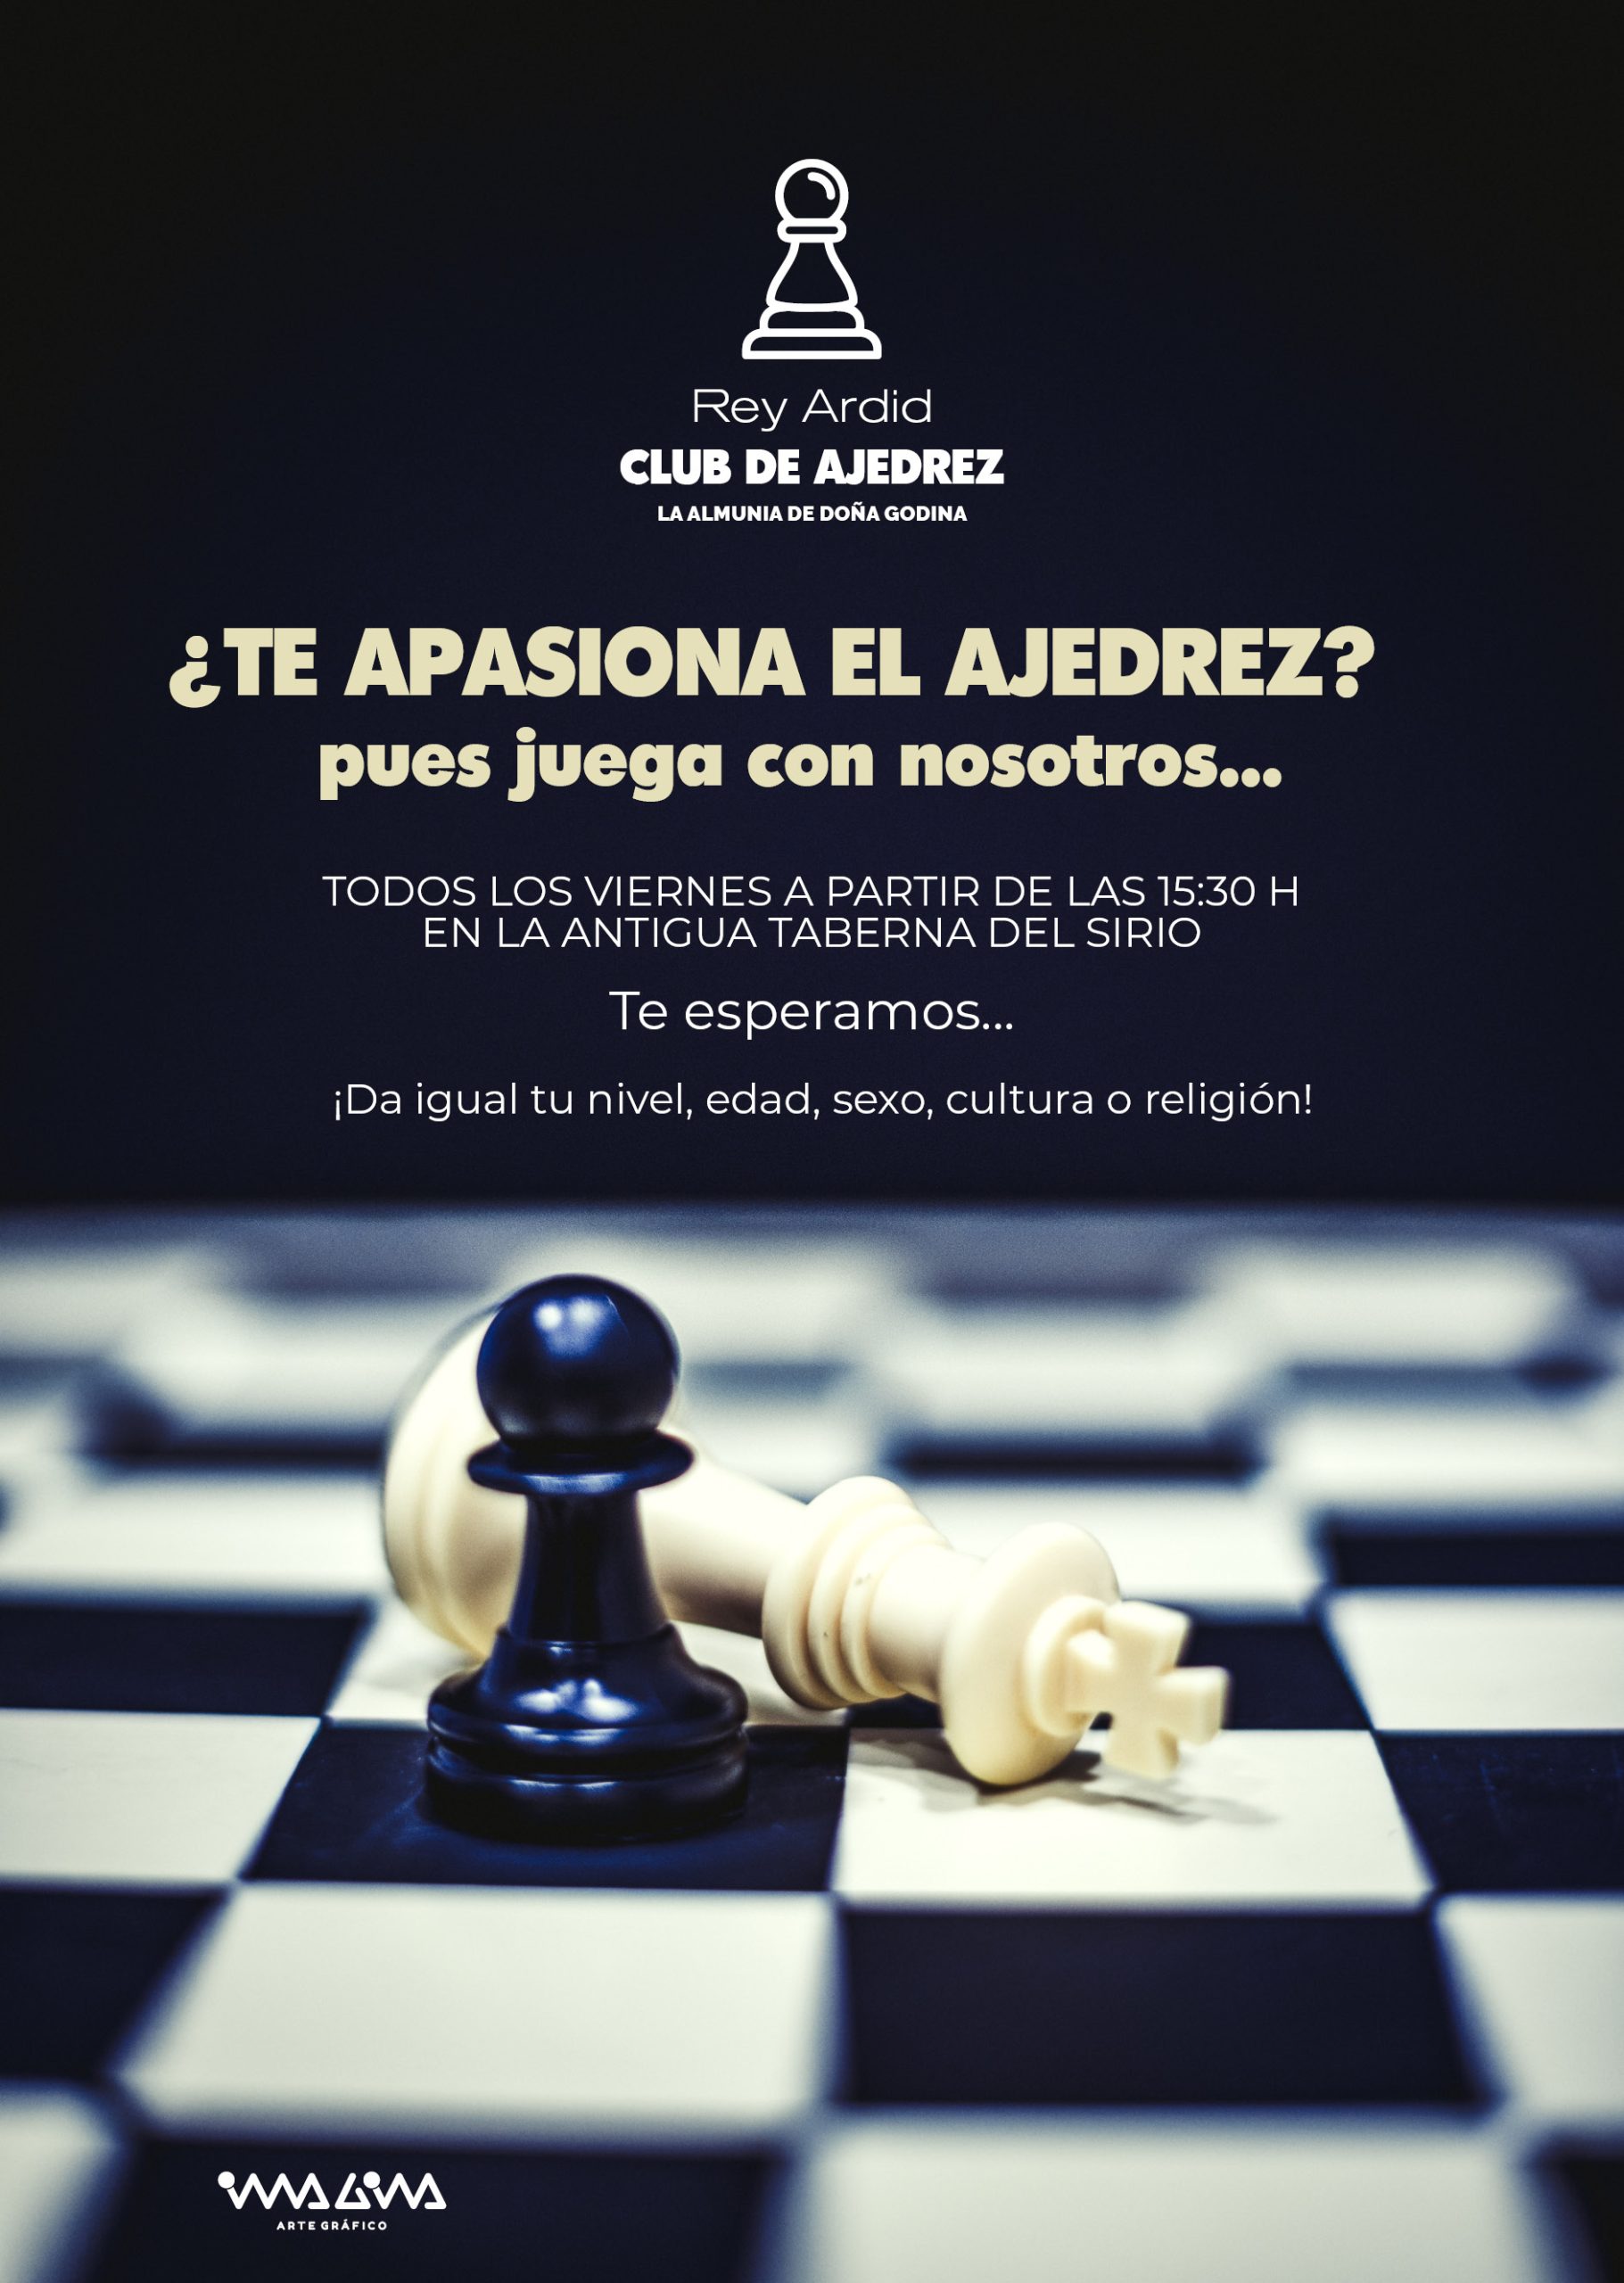 Club de ajedrez La Almunia